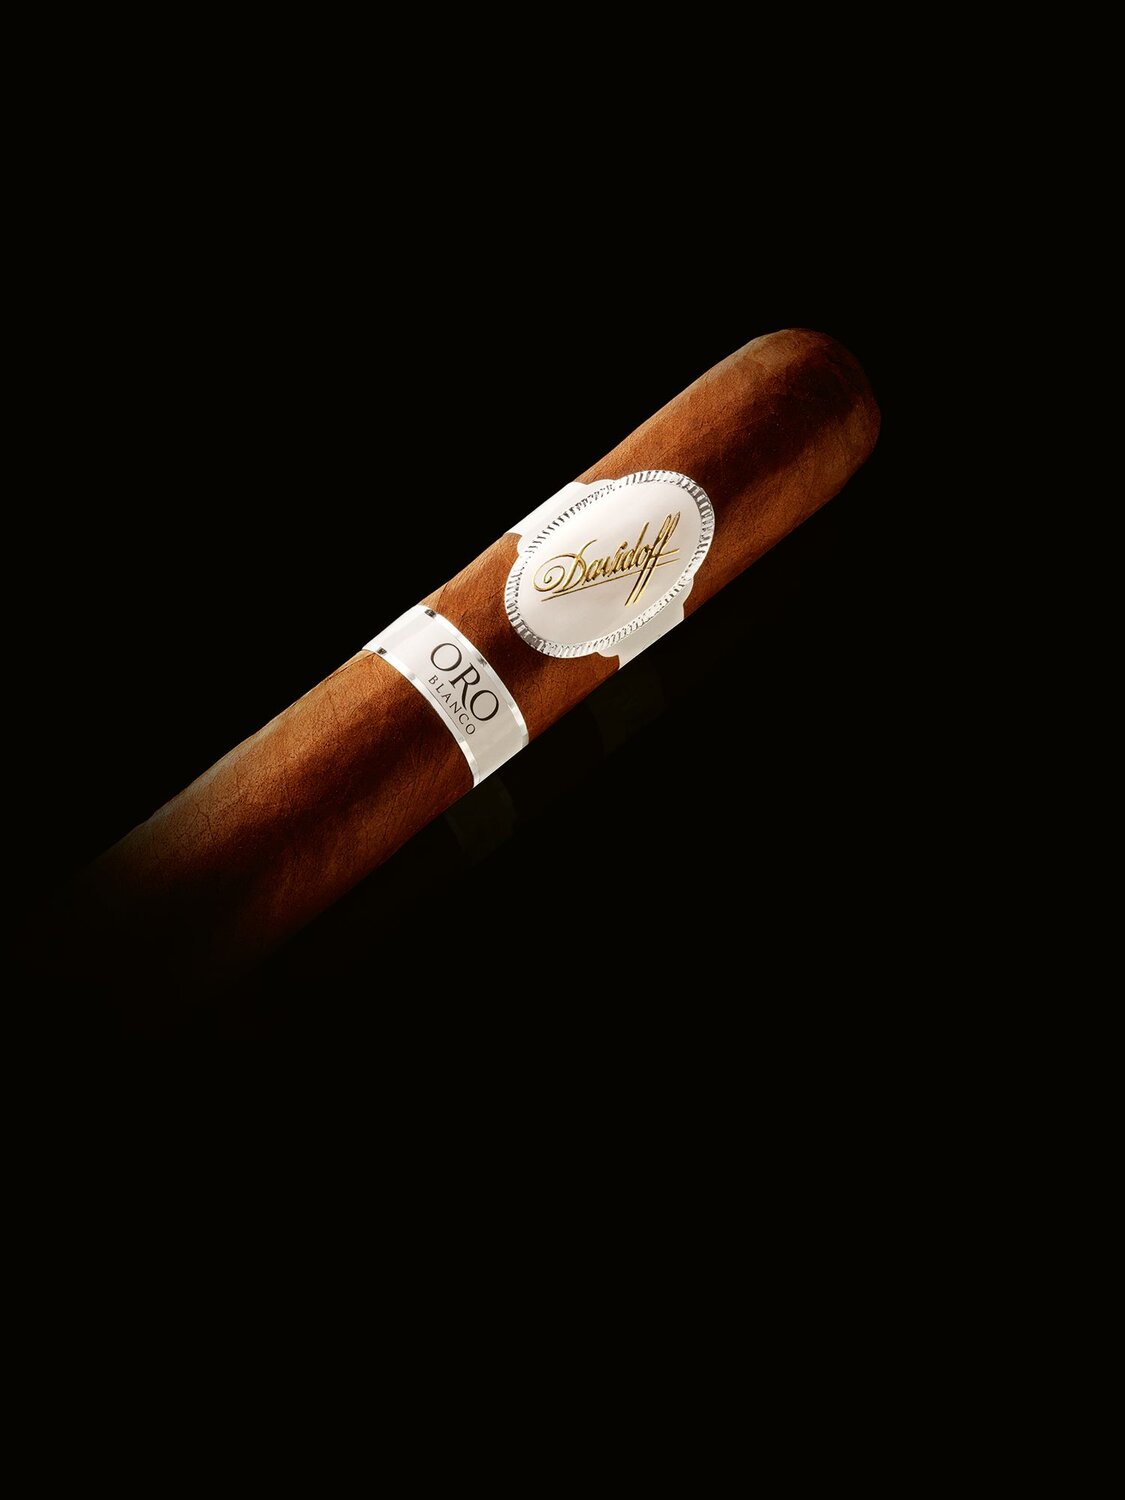 Davidoff Oro Blanco cigars